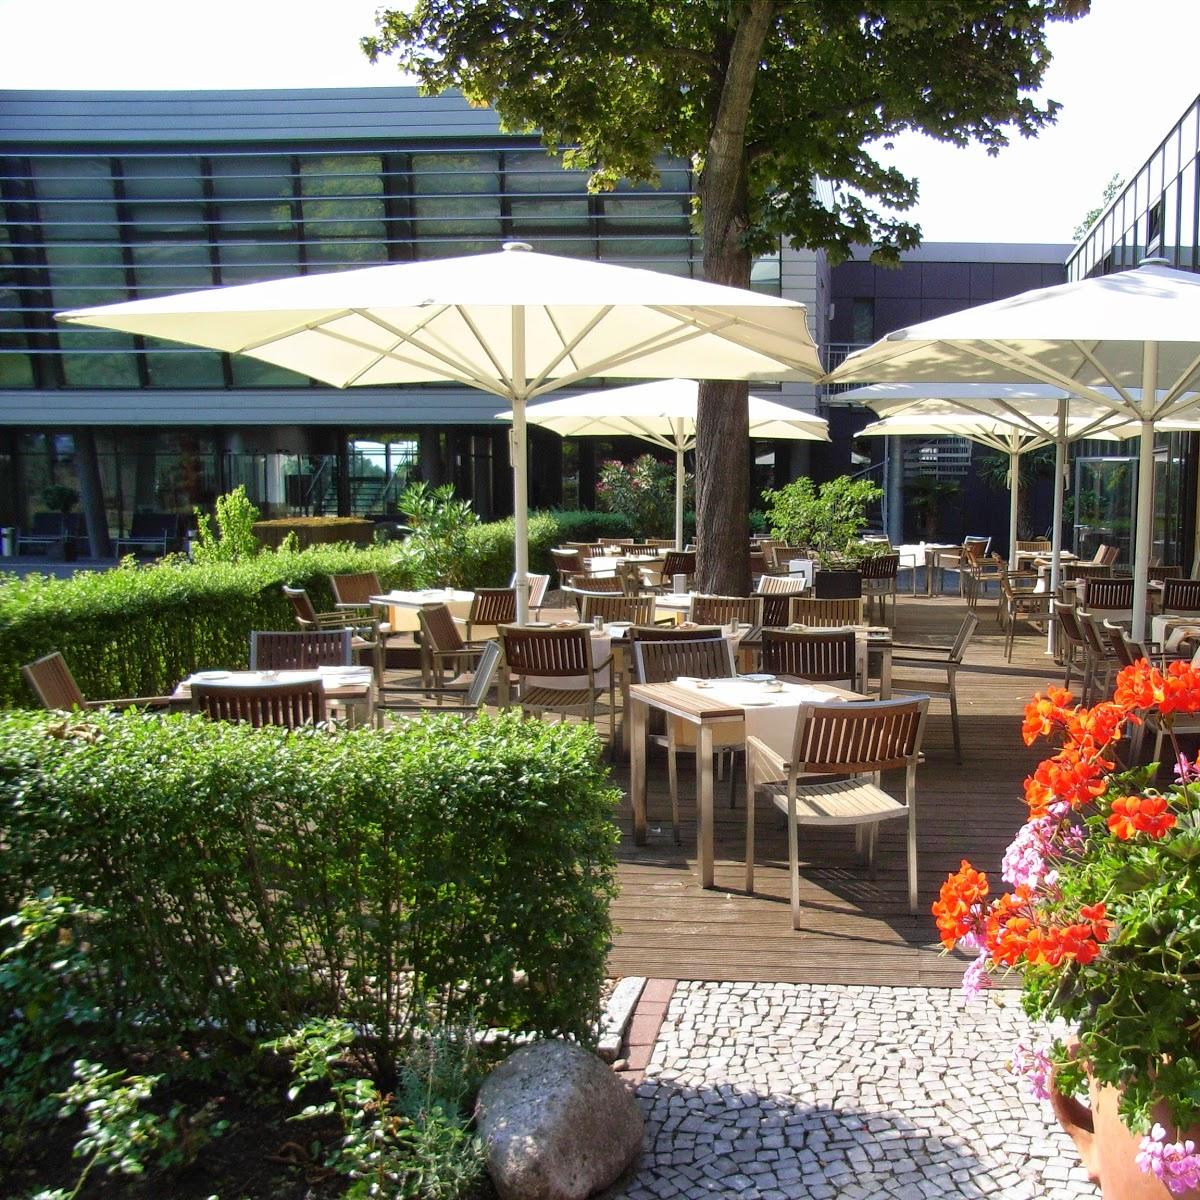 Restaurant "Hotel am See oHG - Gästehaus der  Aktiengesellschaft" in  Salzgitter